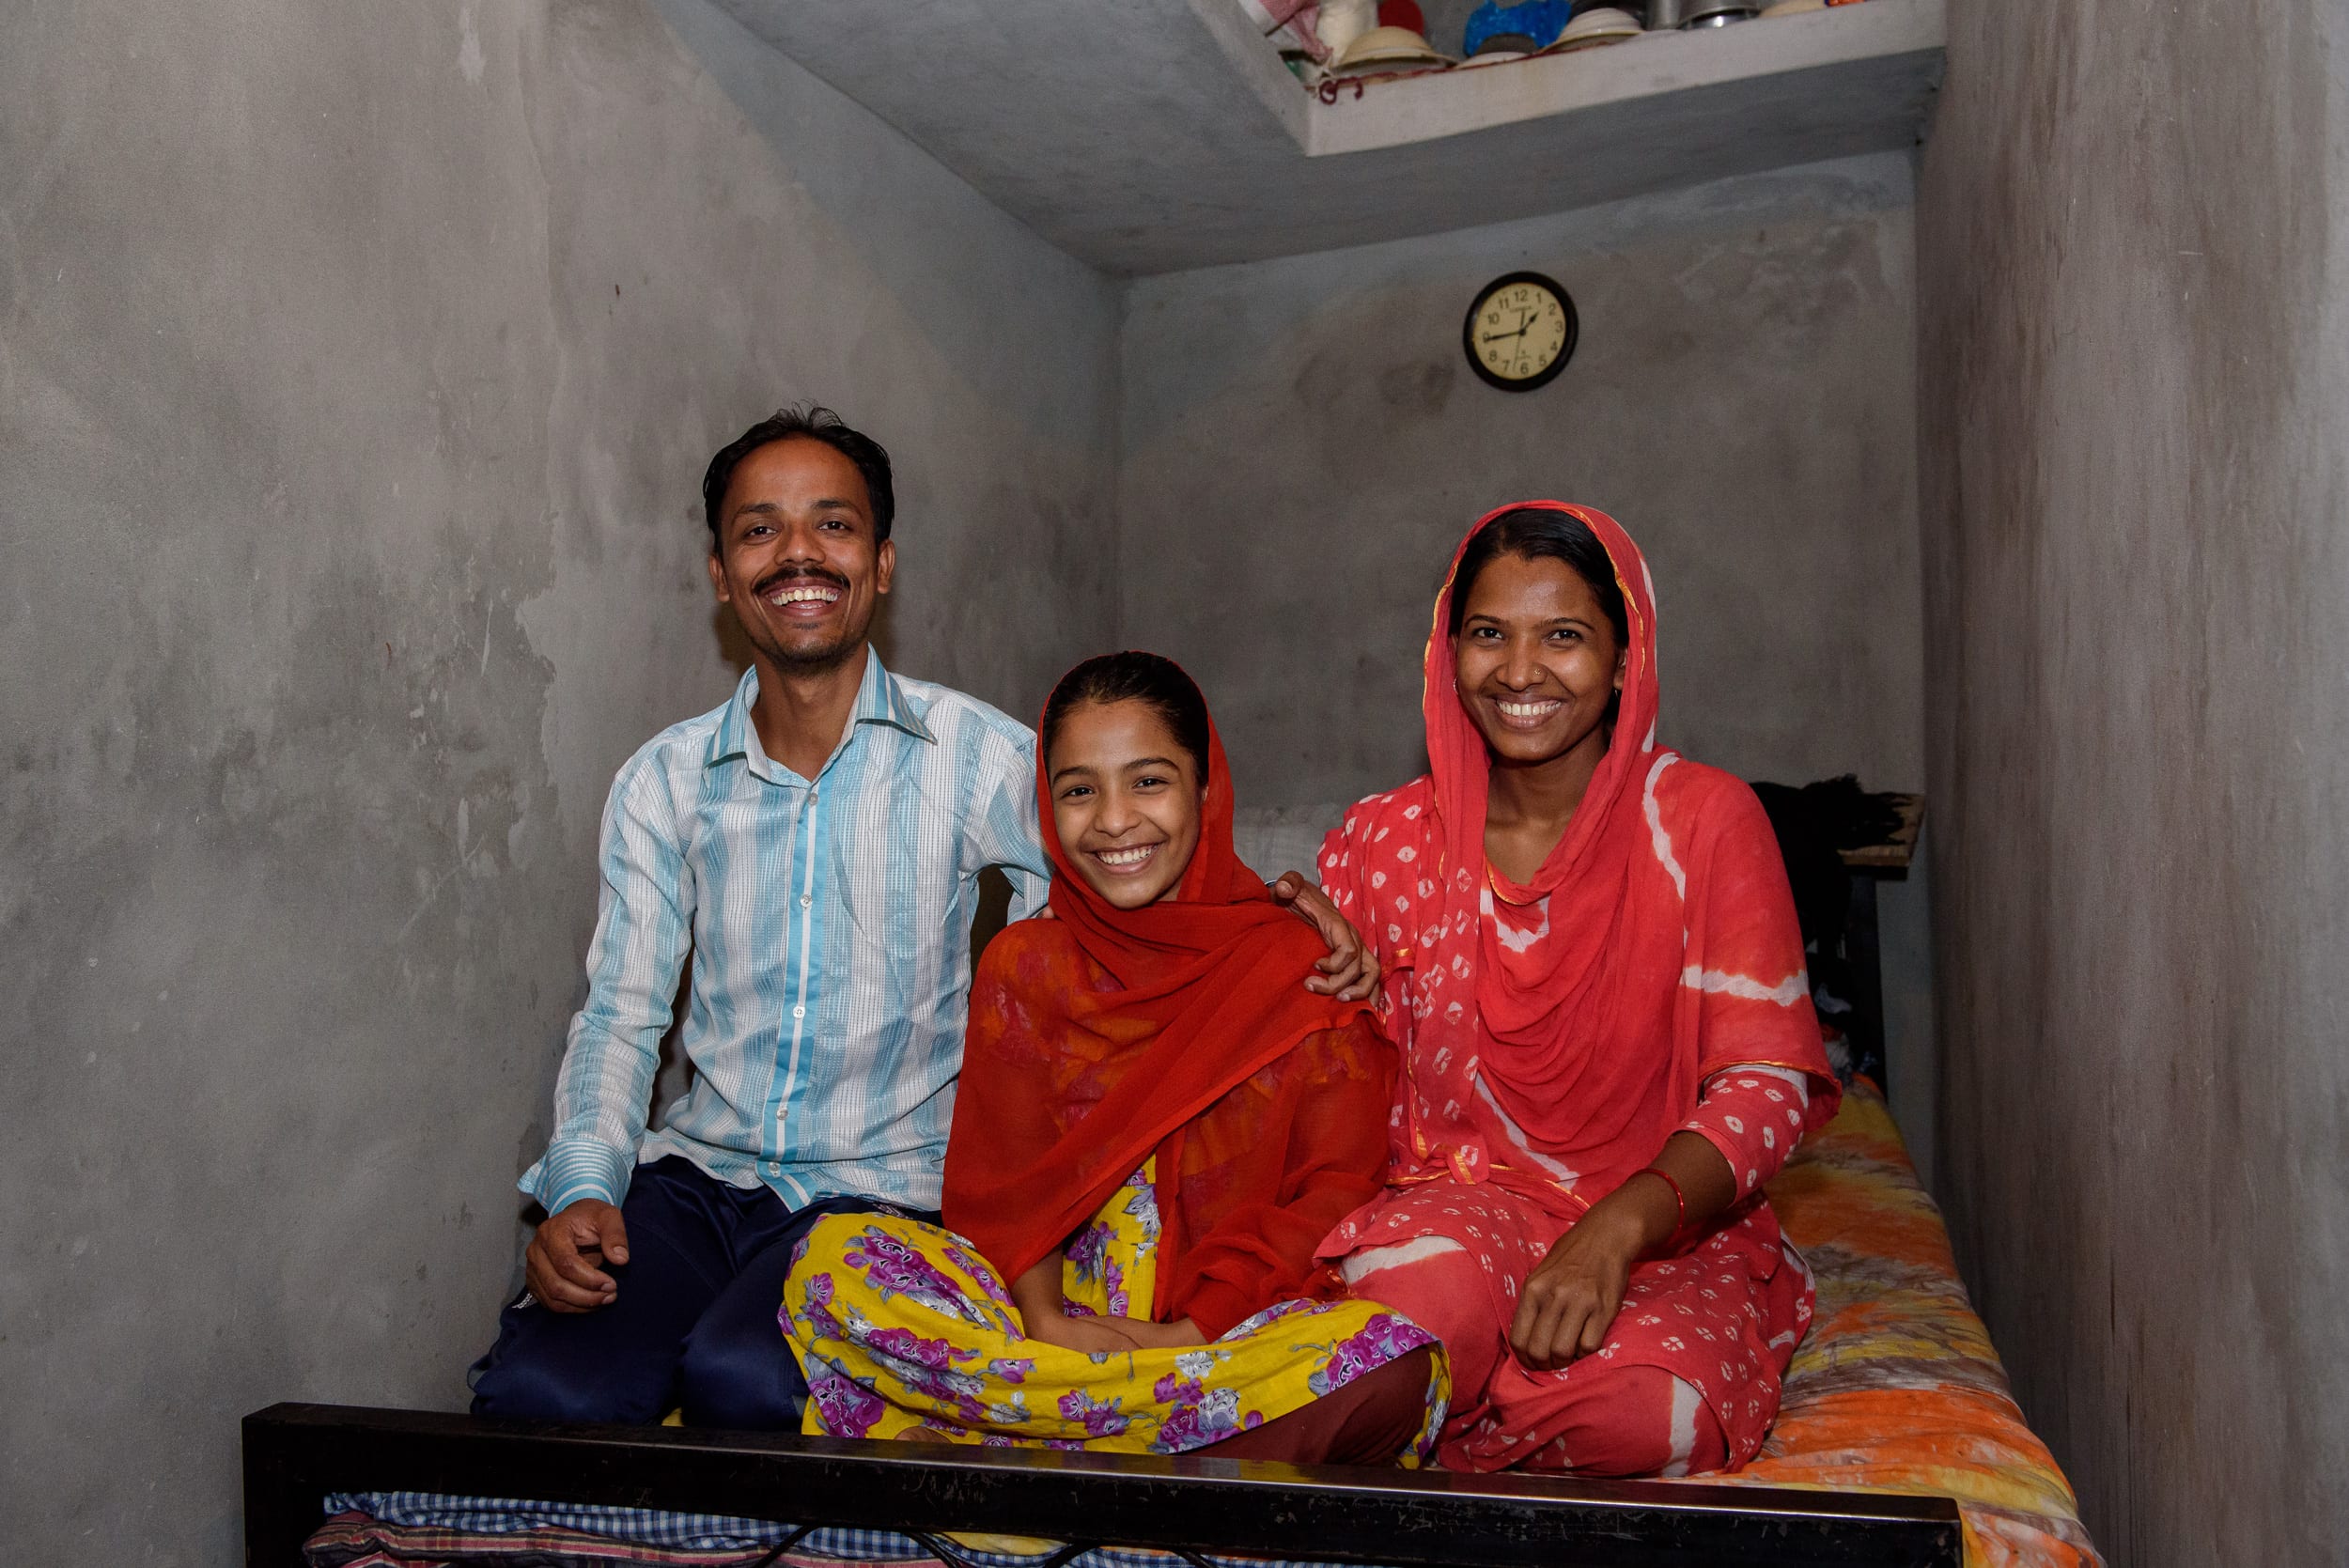 Imran aus Bangladesch mit seiner Familie